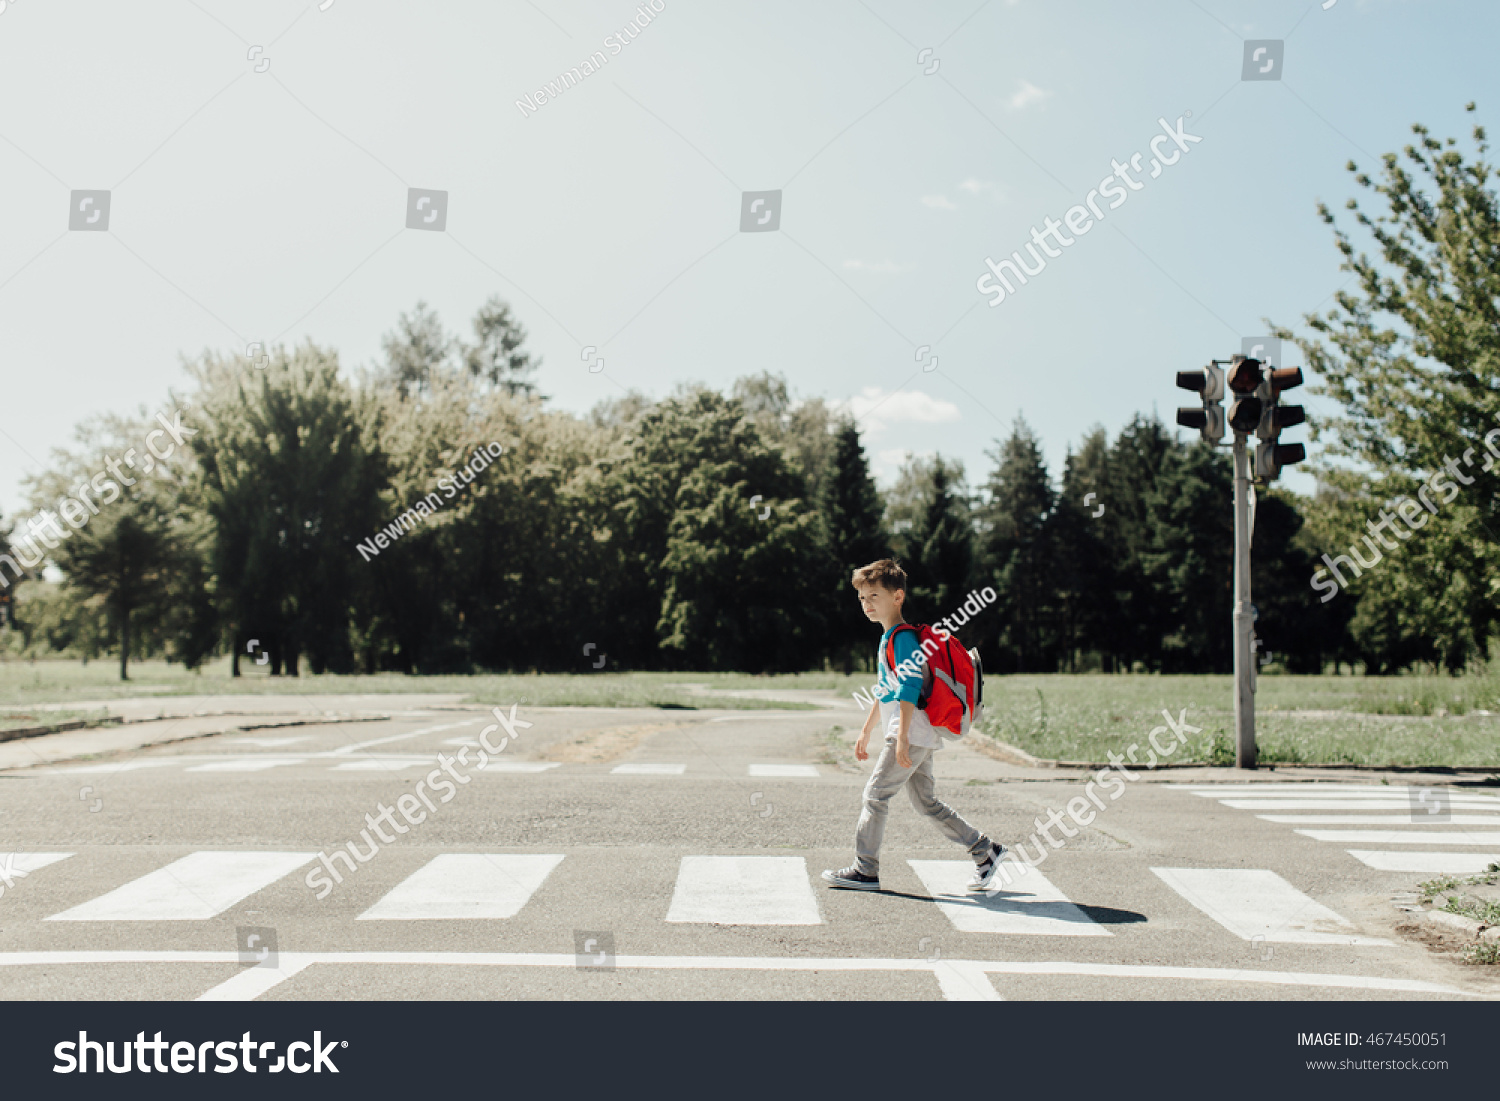 Schoolboy crossing road on way to school #467450051